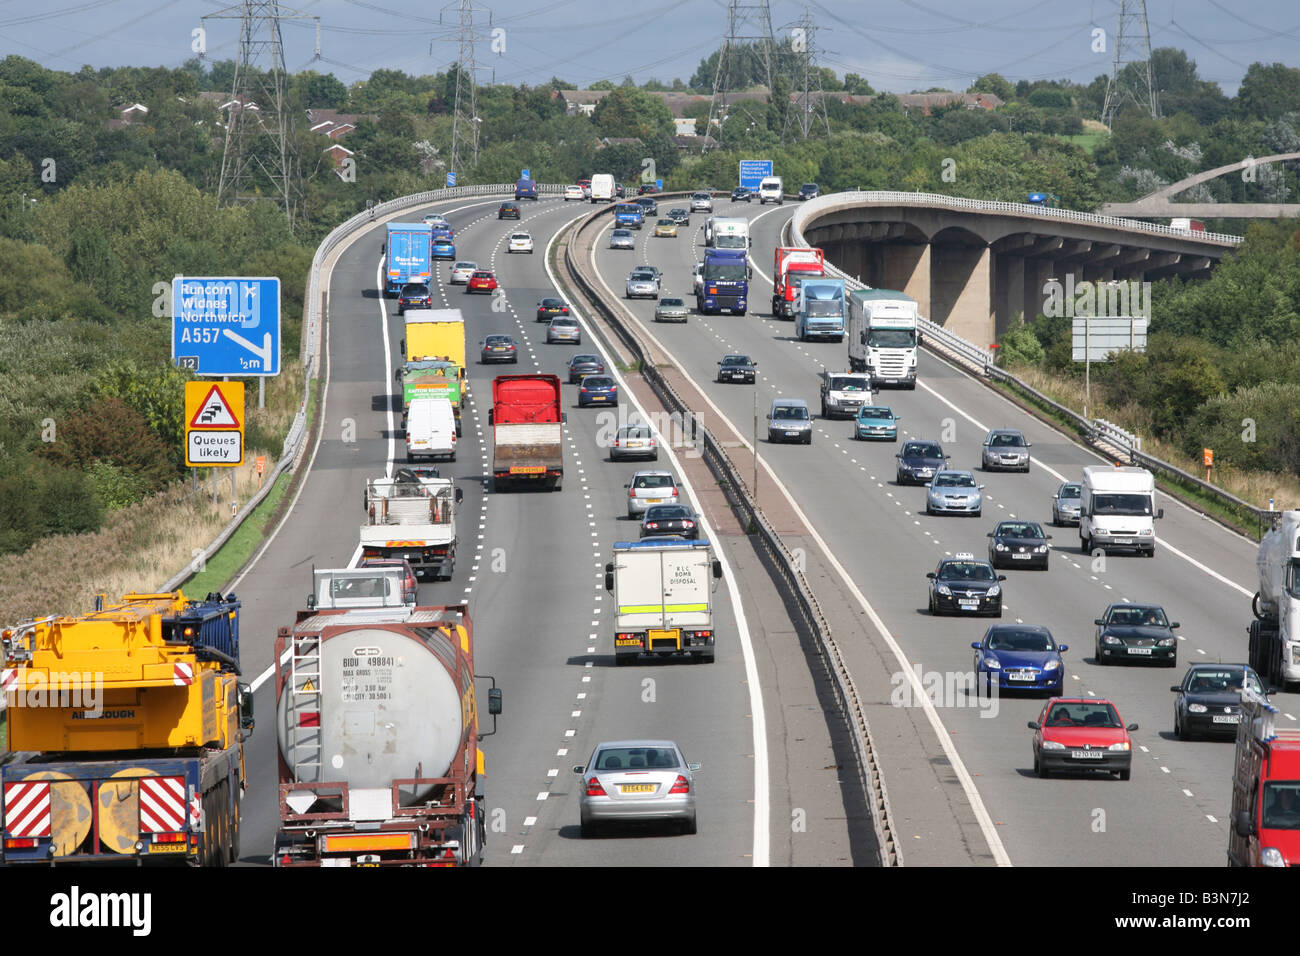 M56 motorway traffic, Runcorn,Cheshire,North West England,UK Stock Photo